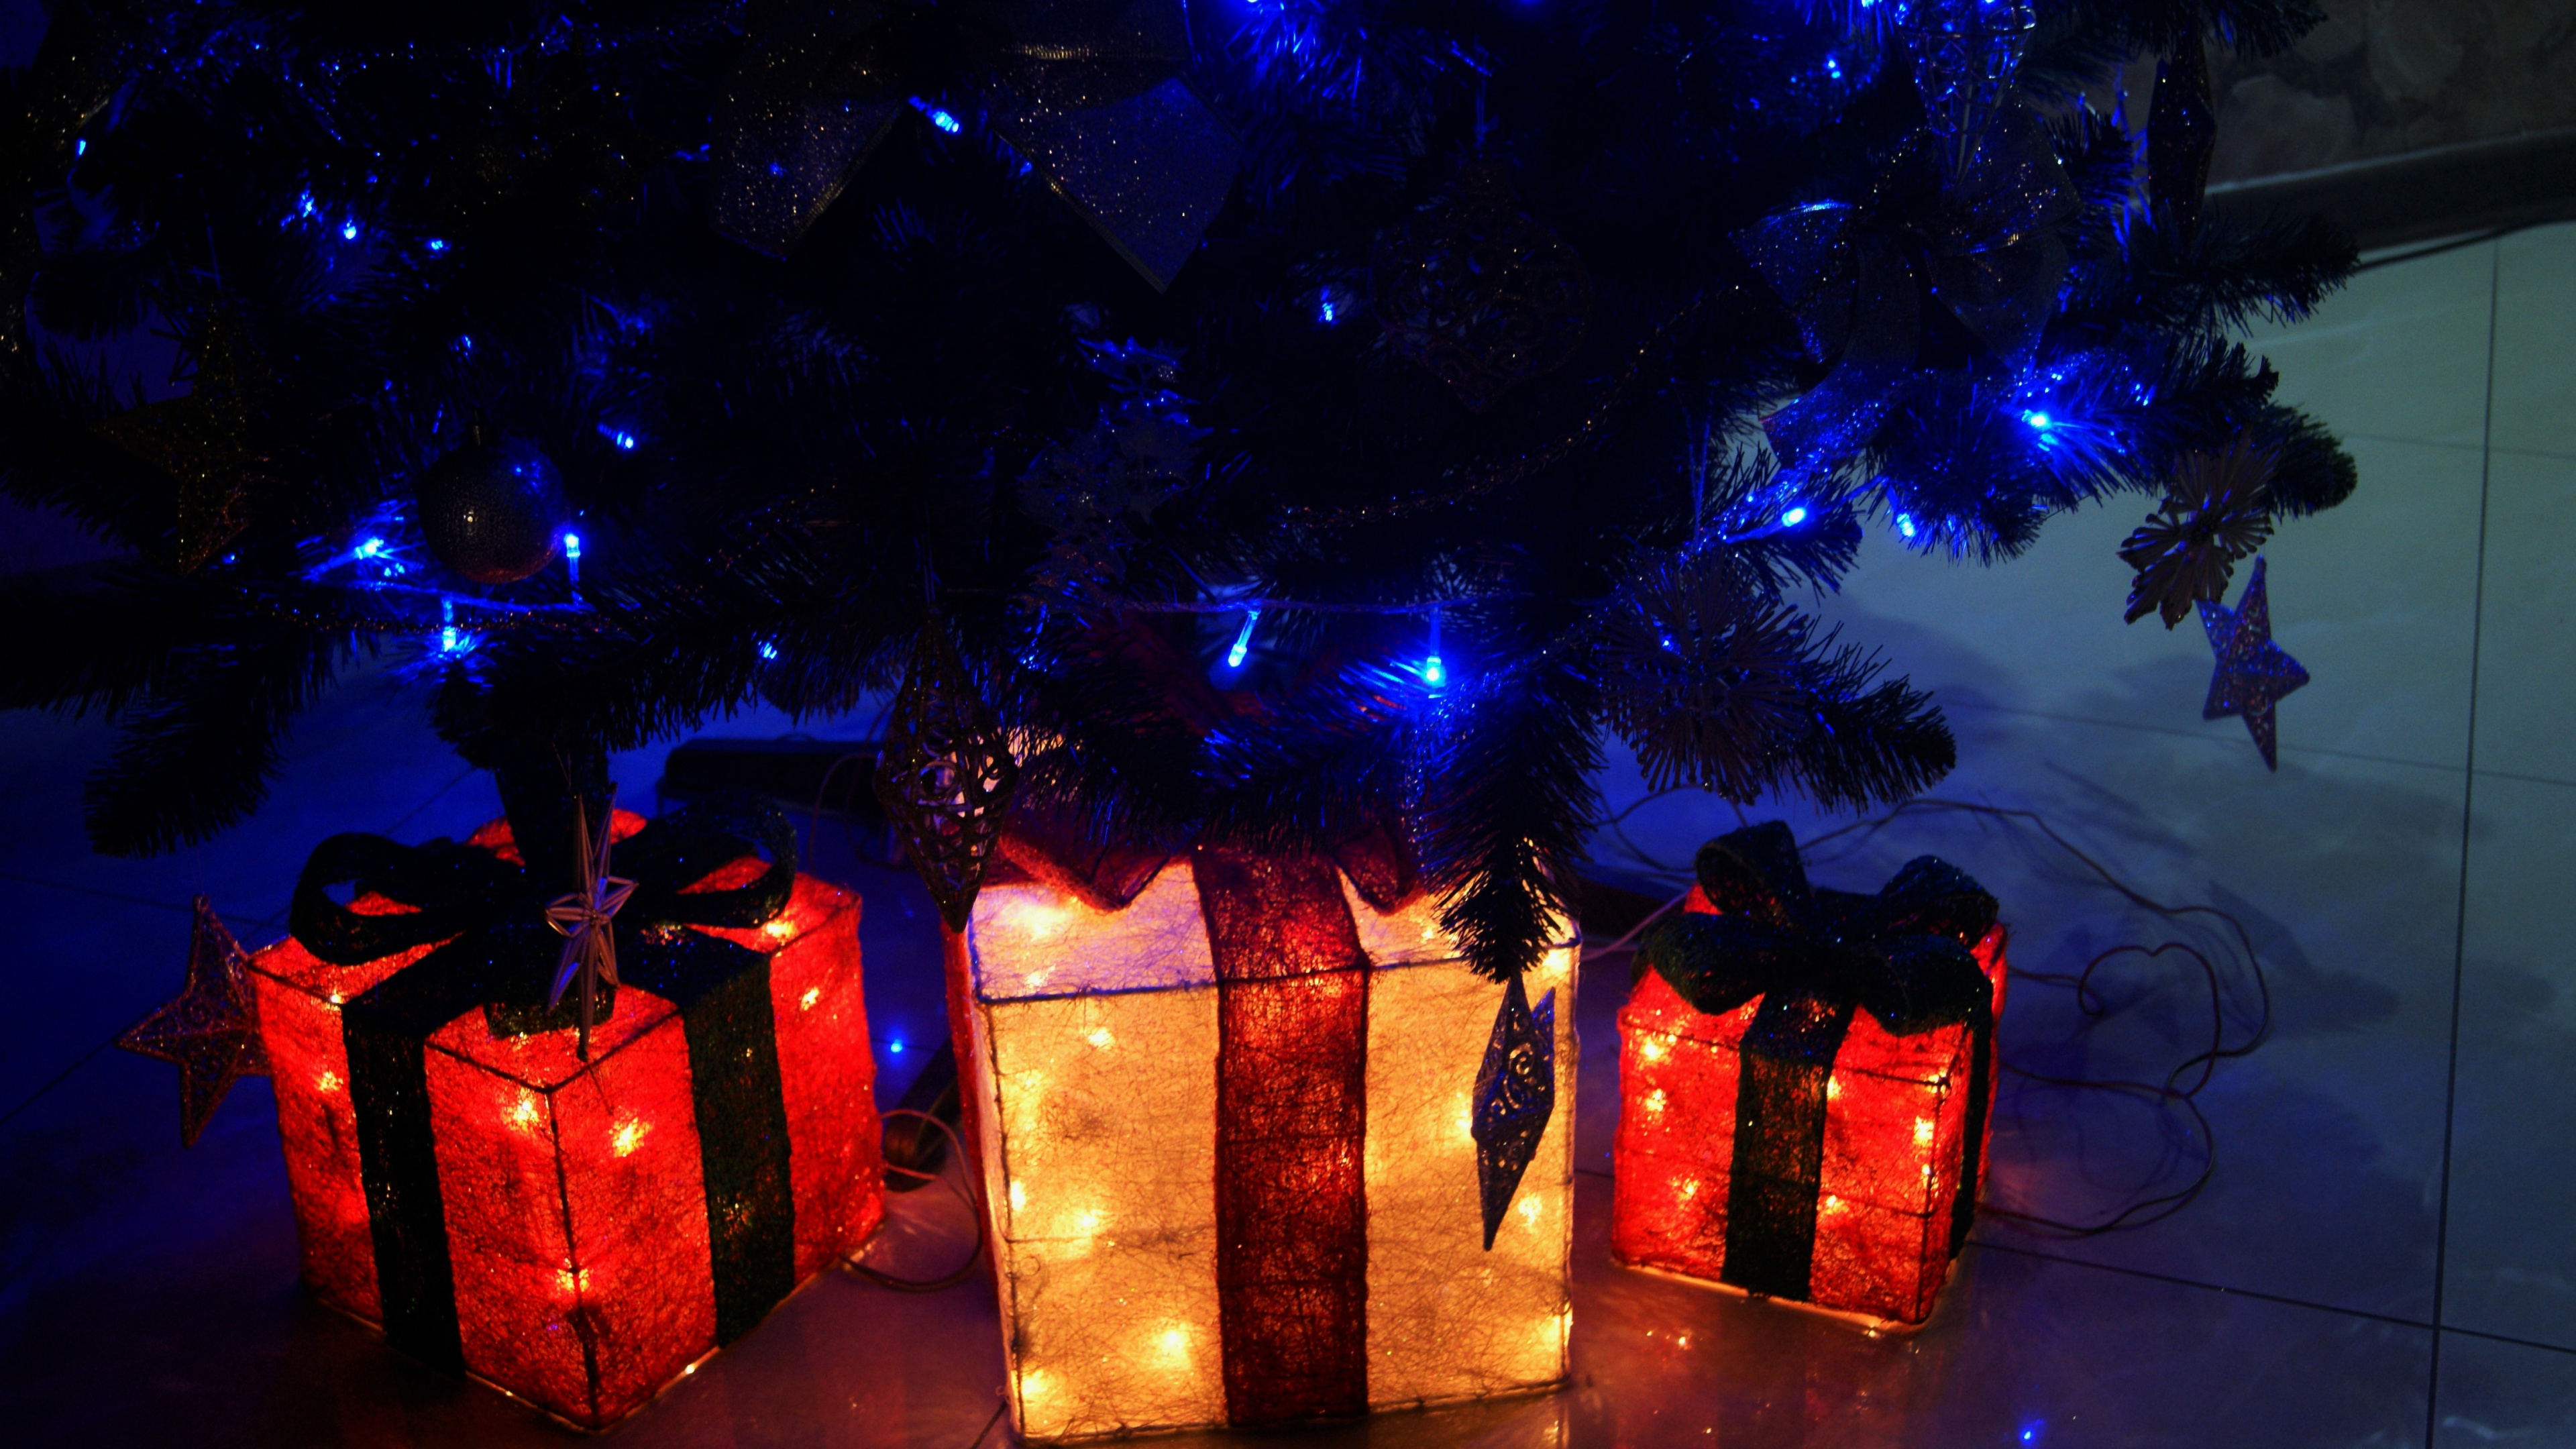 Licht, Weihnachtsbeleuchtung, Neujahr, Weihnachten, Neujahr Baum. Wallpaper in 3840x2160 Resolution